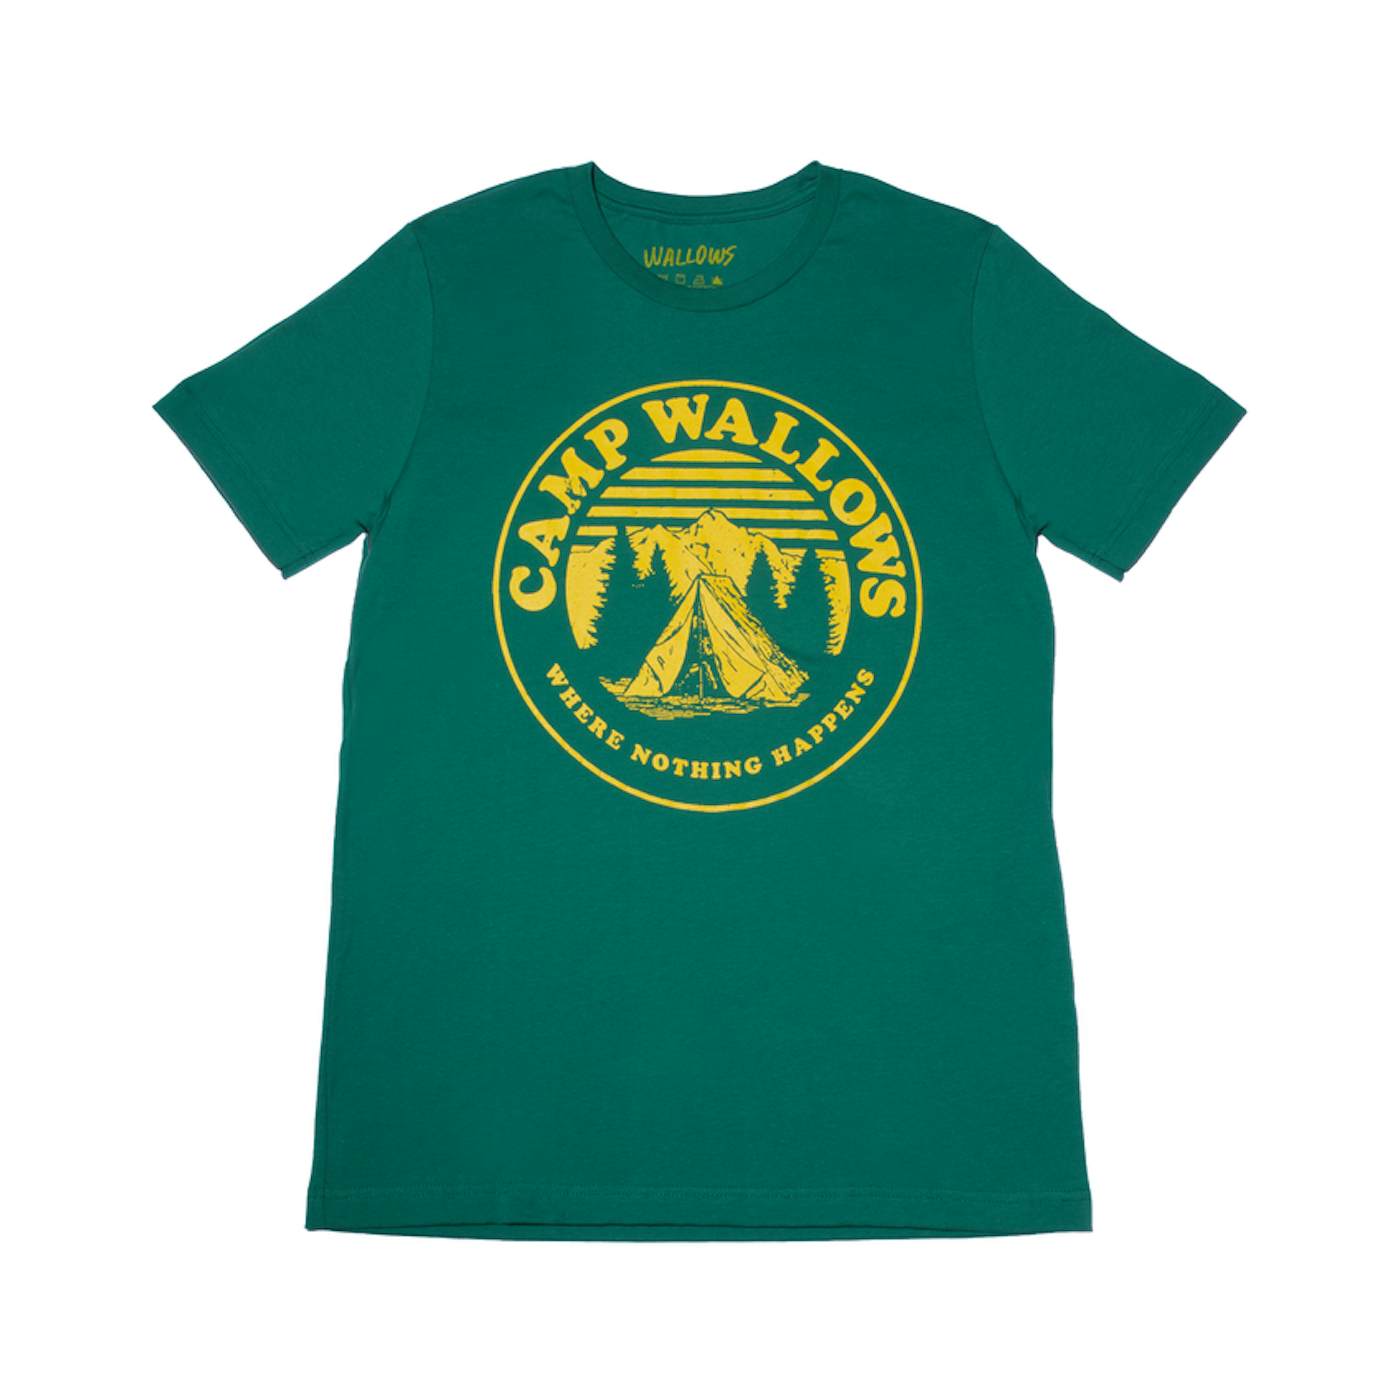 Wallows Summer Camp T-Shirt